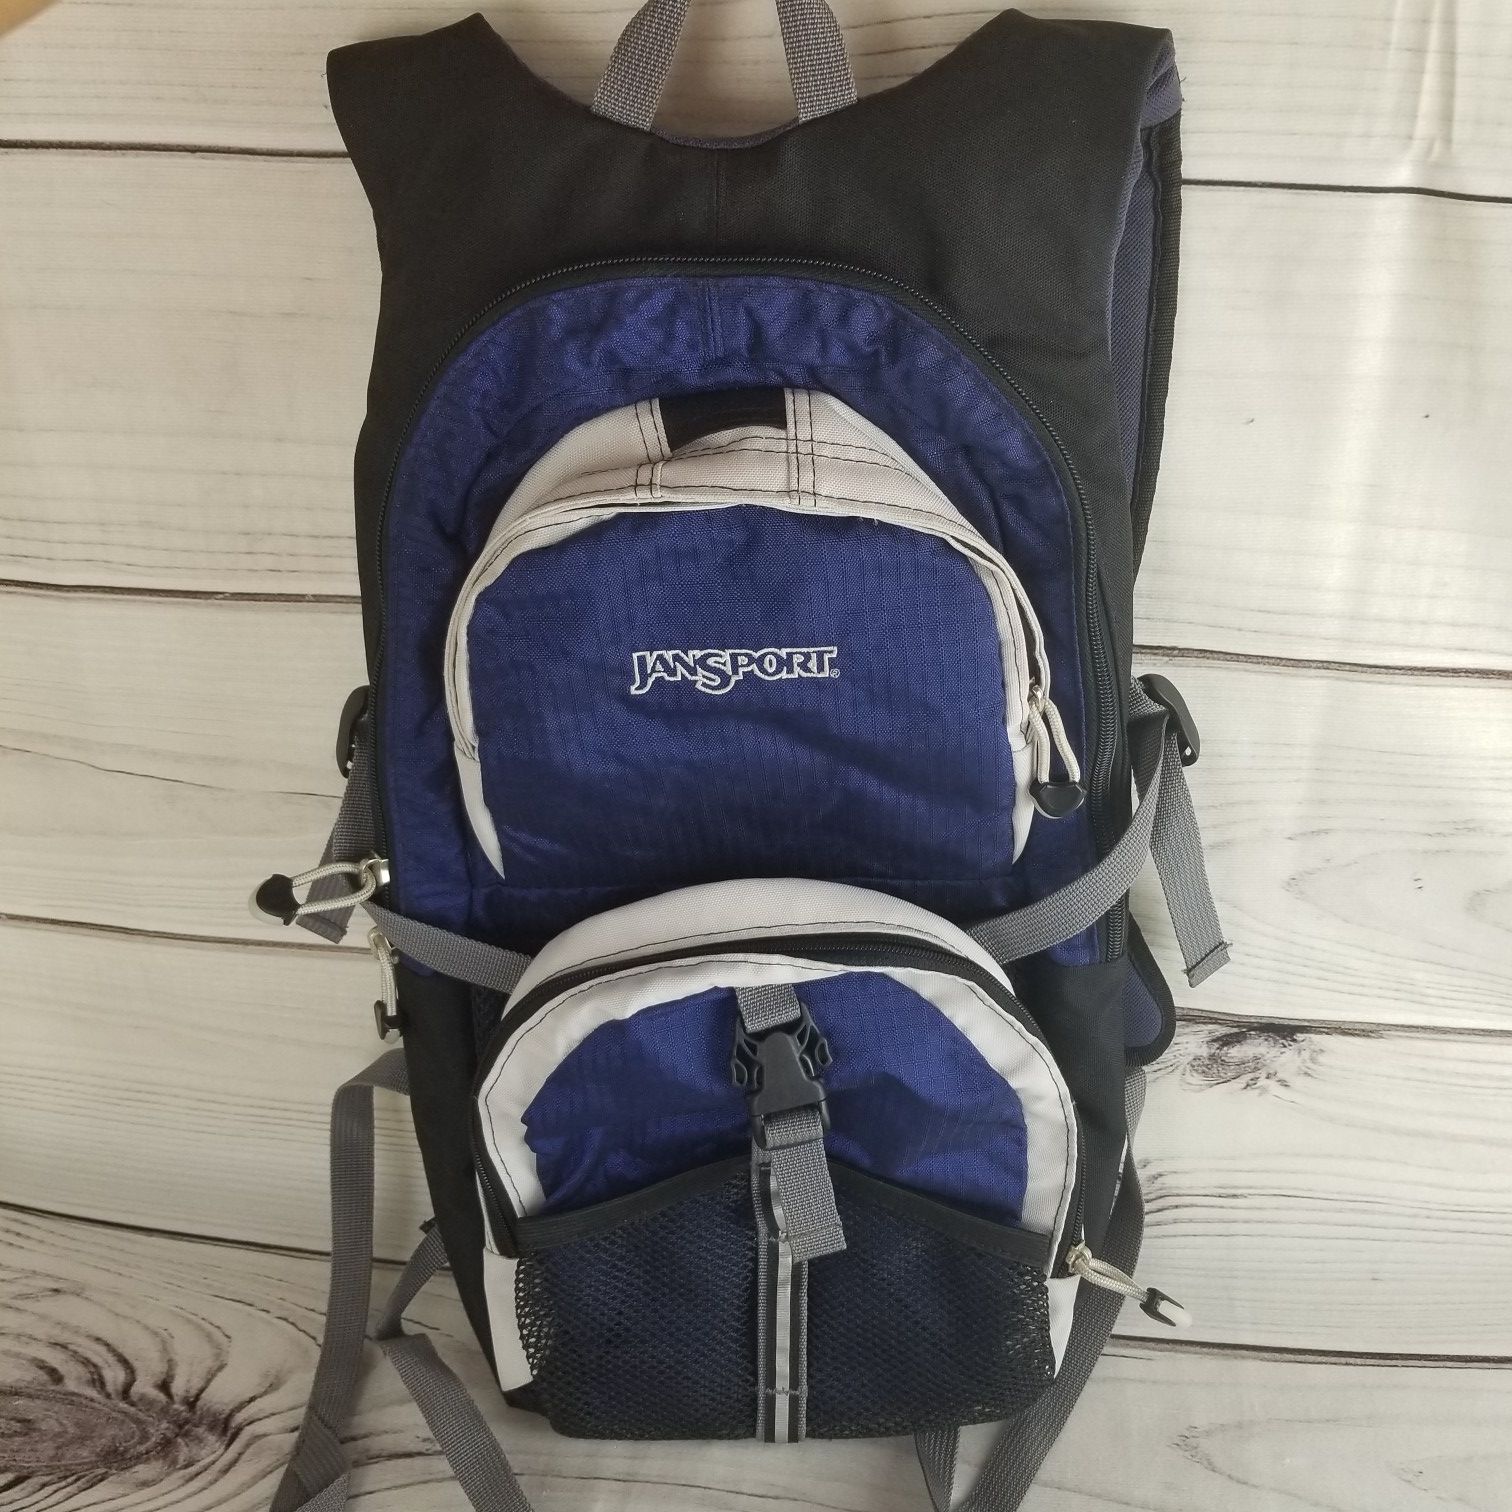 JanSport hiking backpack